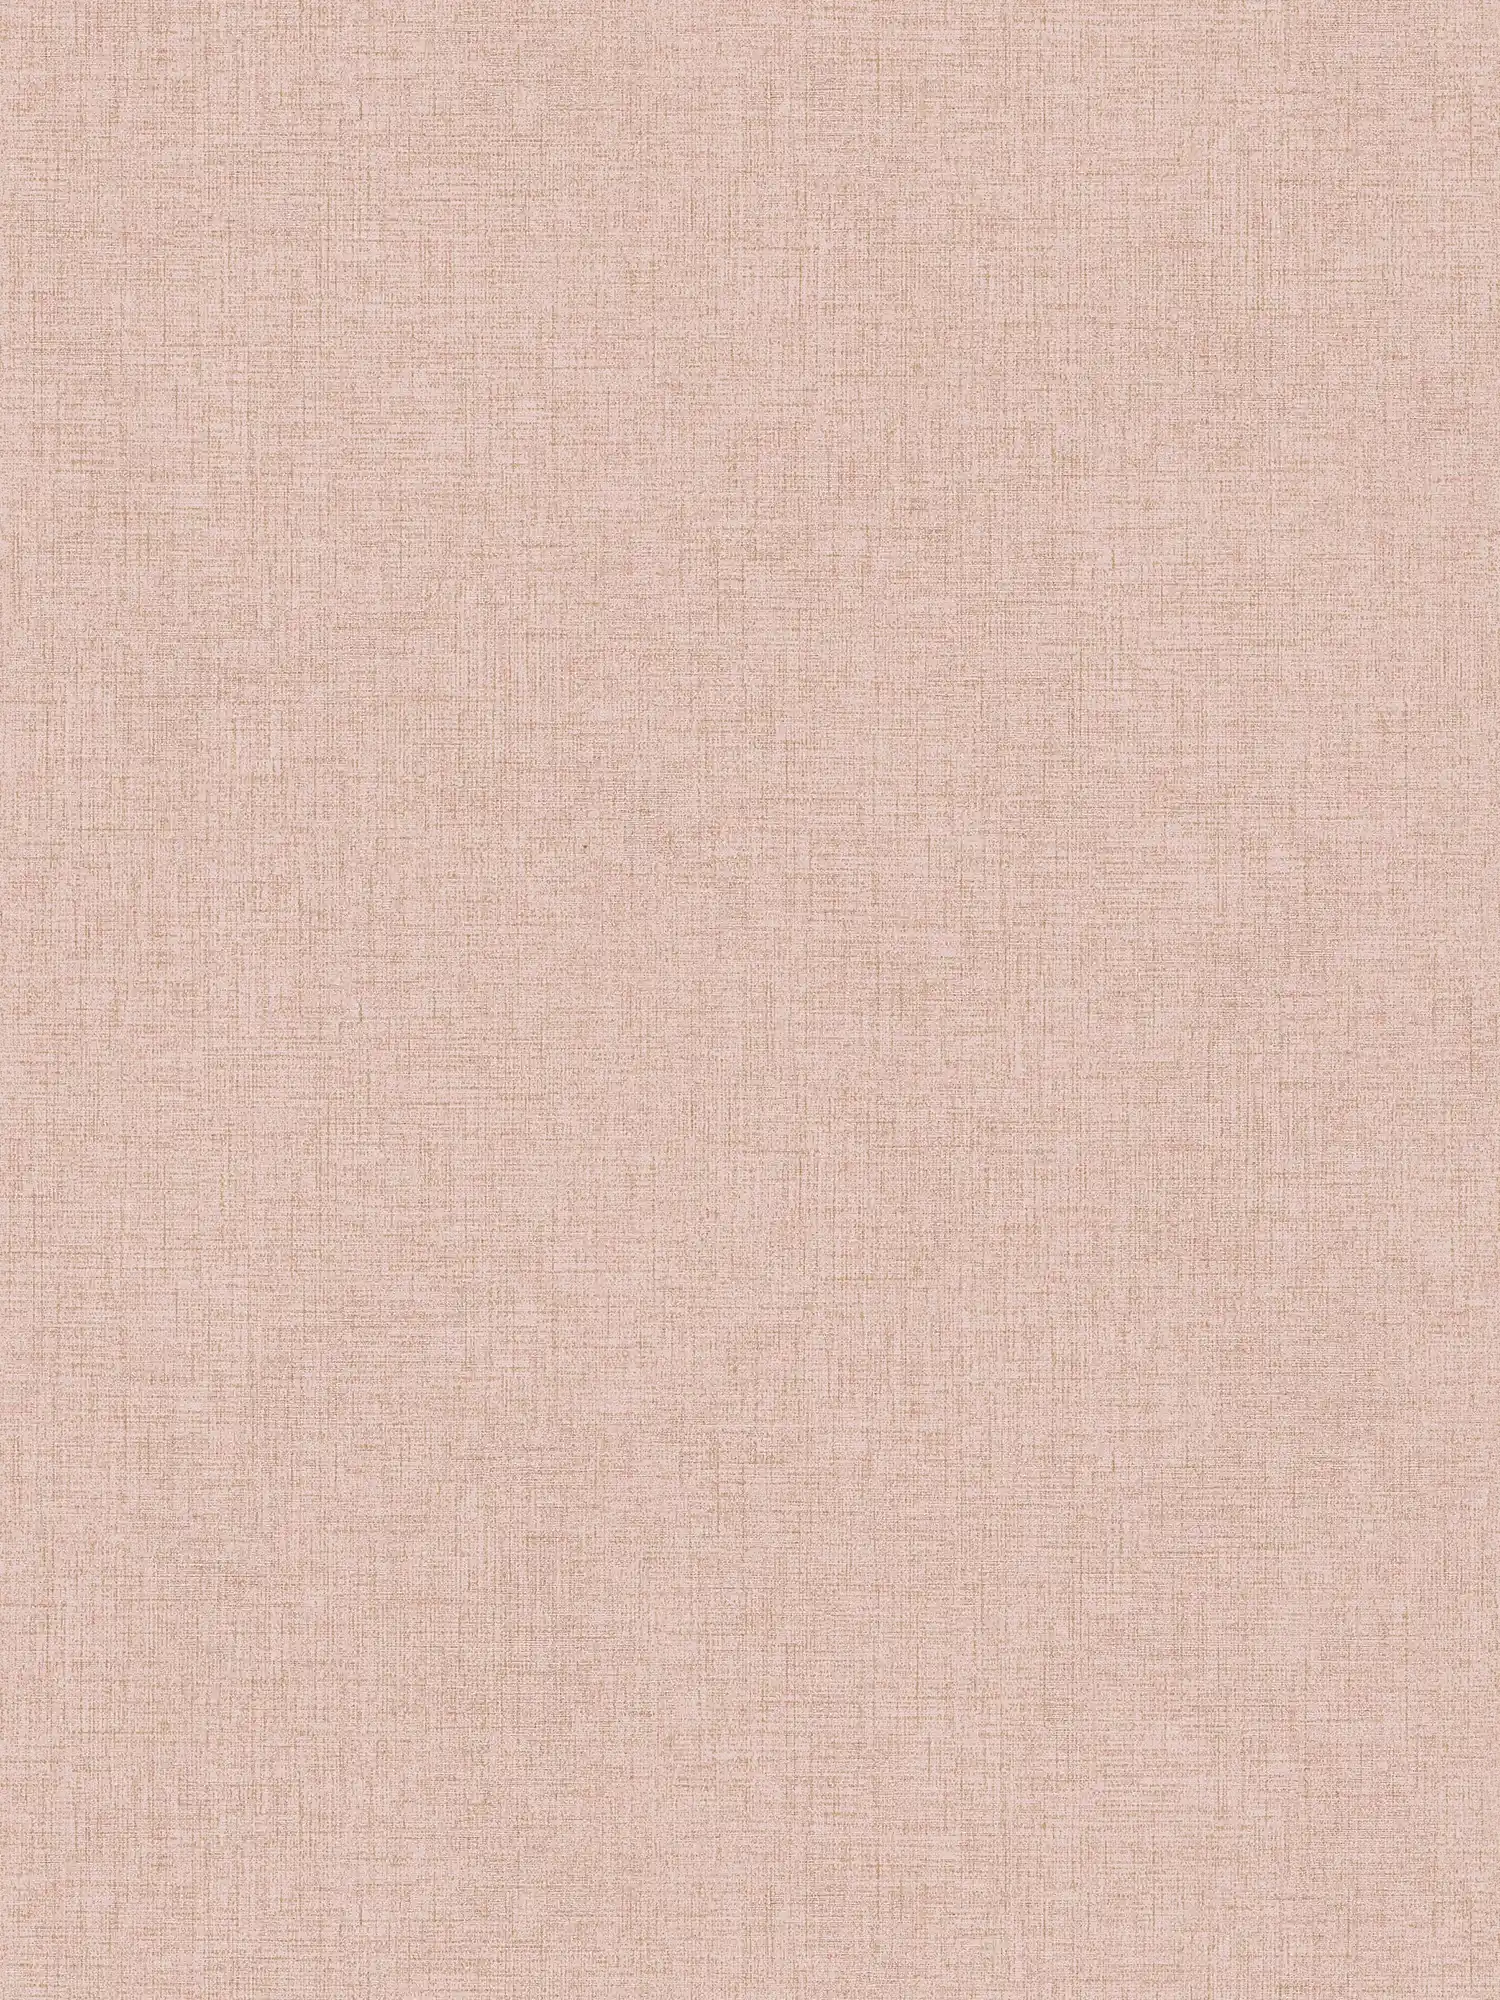 Papel pintado de unidad con aspecto de lino sutil - rosa
